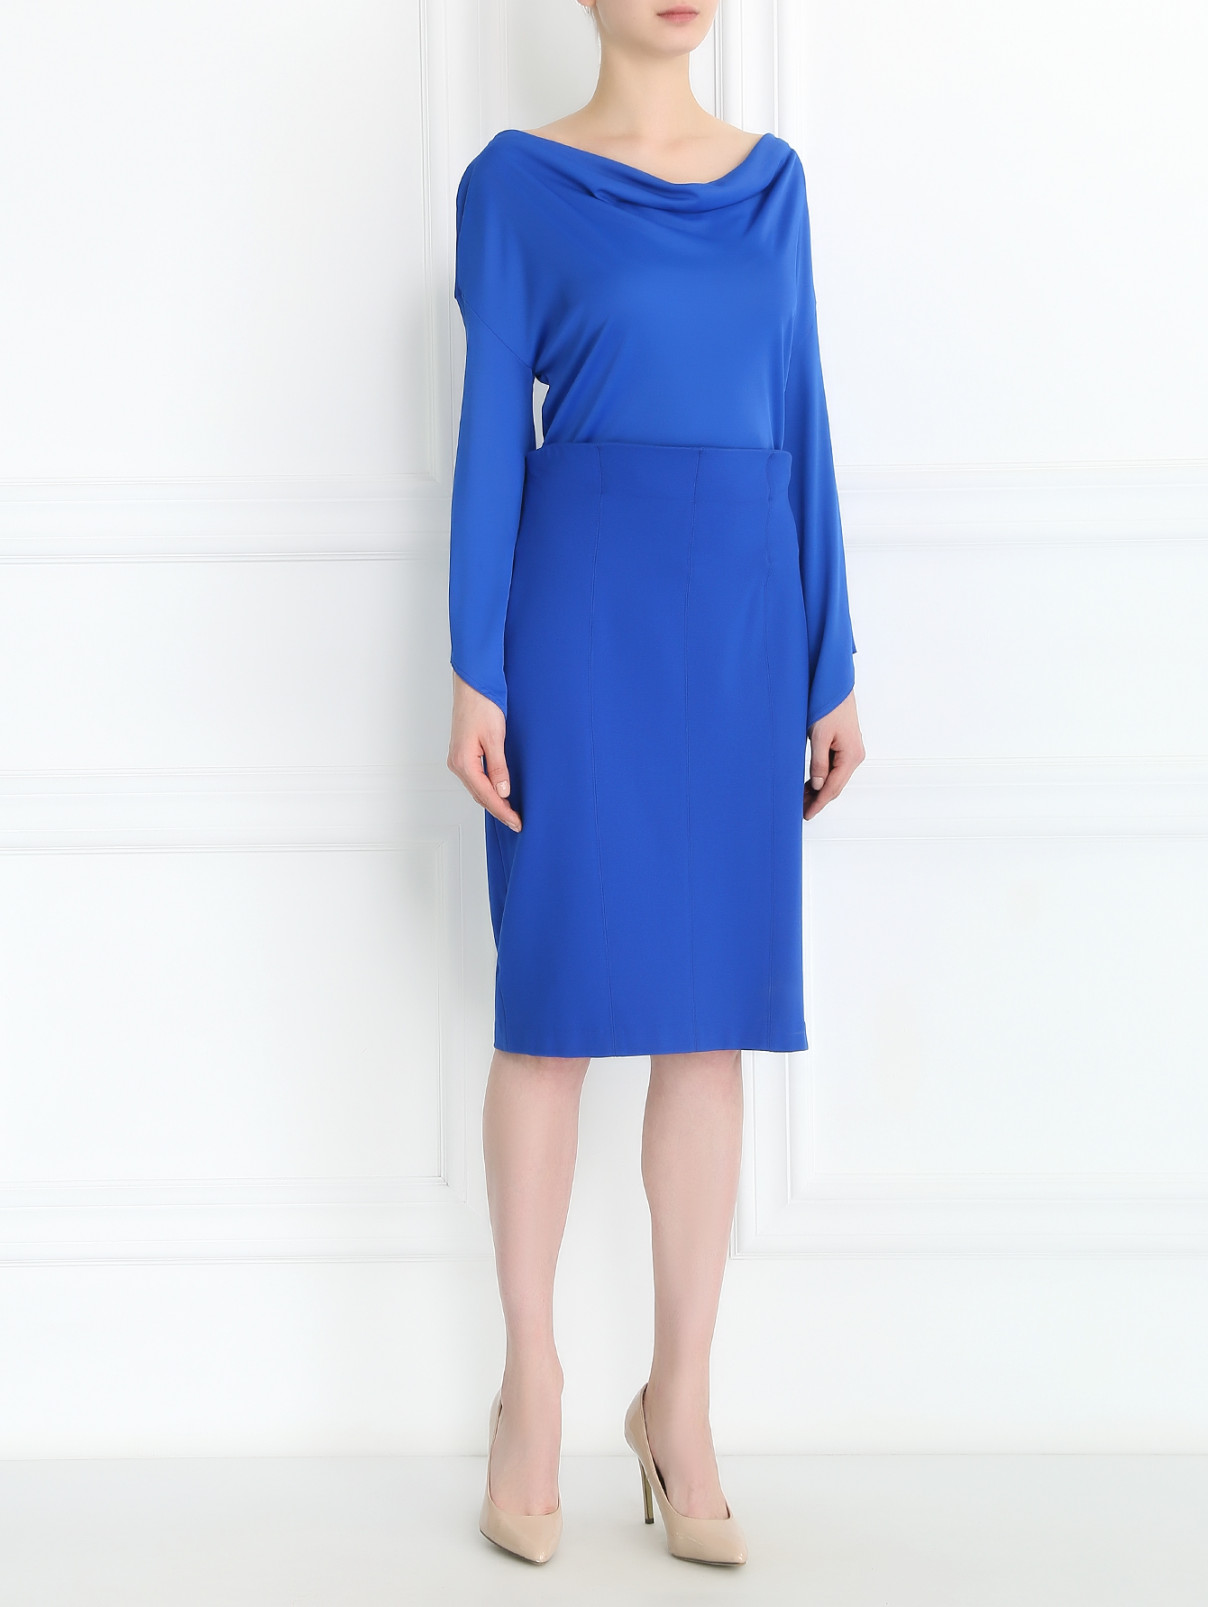 Платье с драпировкой Versace Collection  –  Модель Общий вид  – Цвет:  Синий